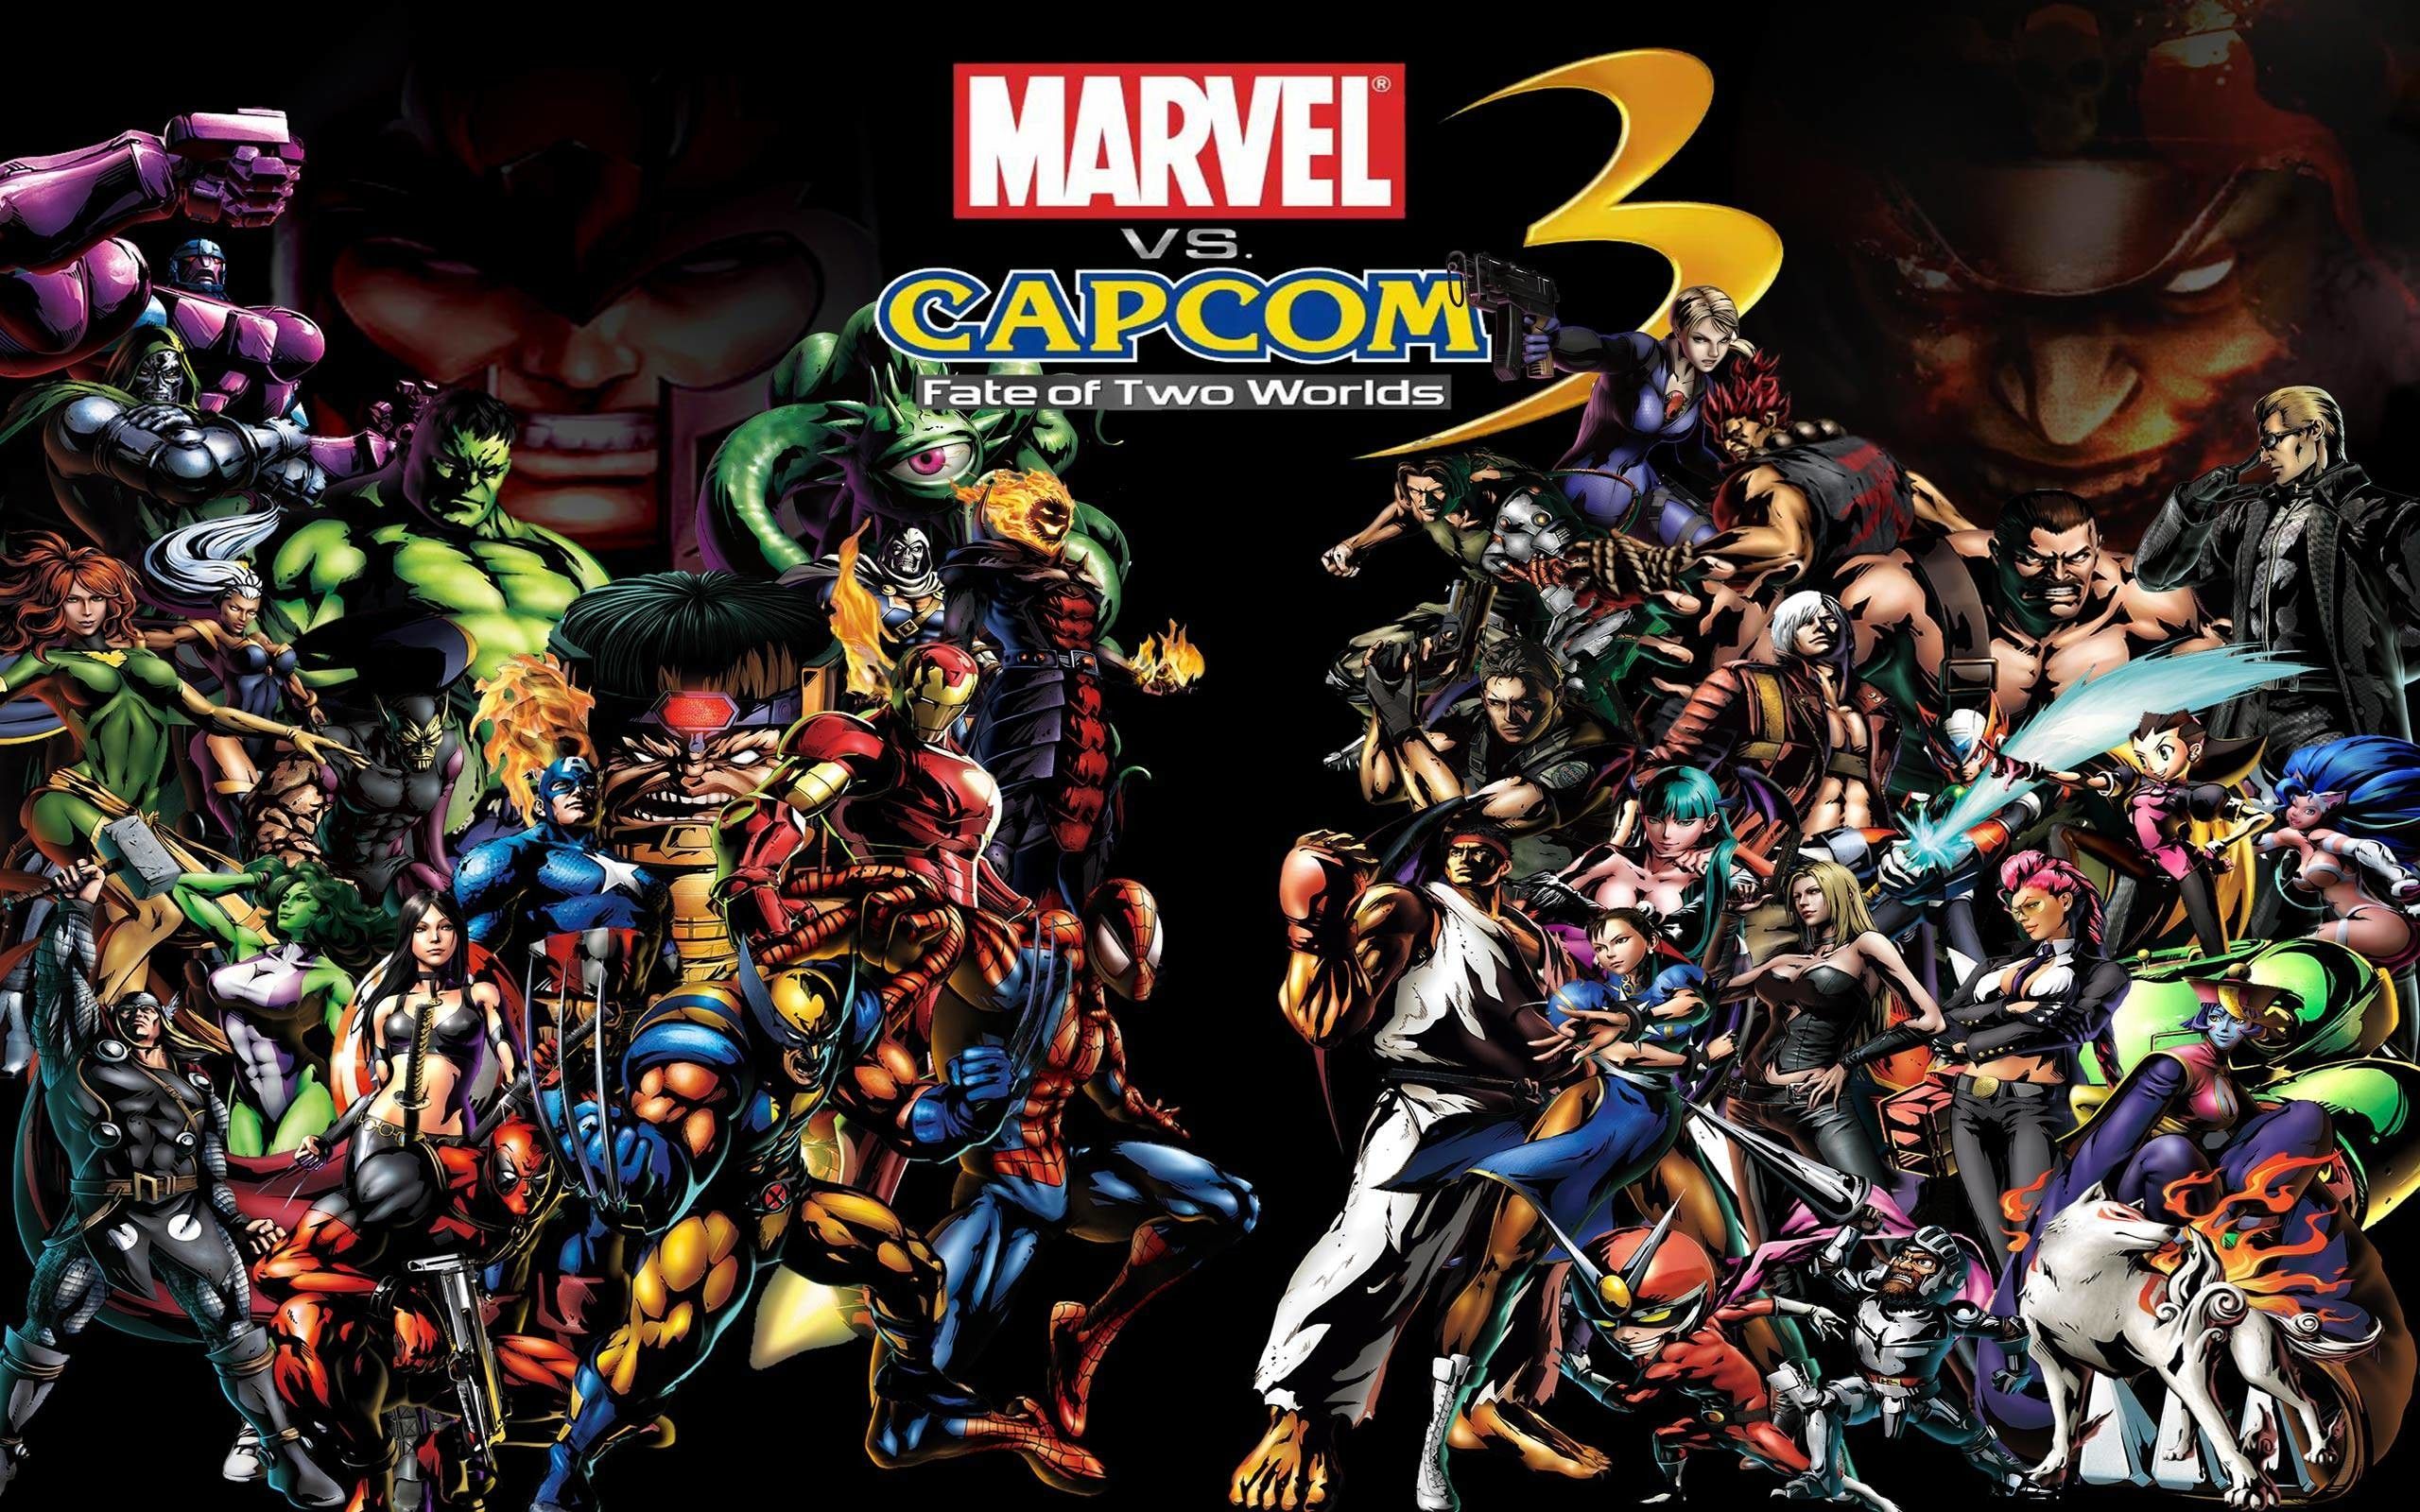 Marvel Vs. Capcom Wallpaper Free .wallpaperaccess.com